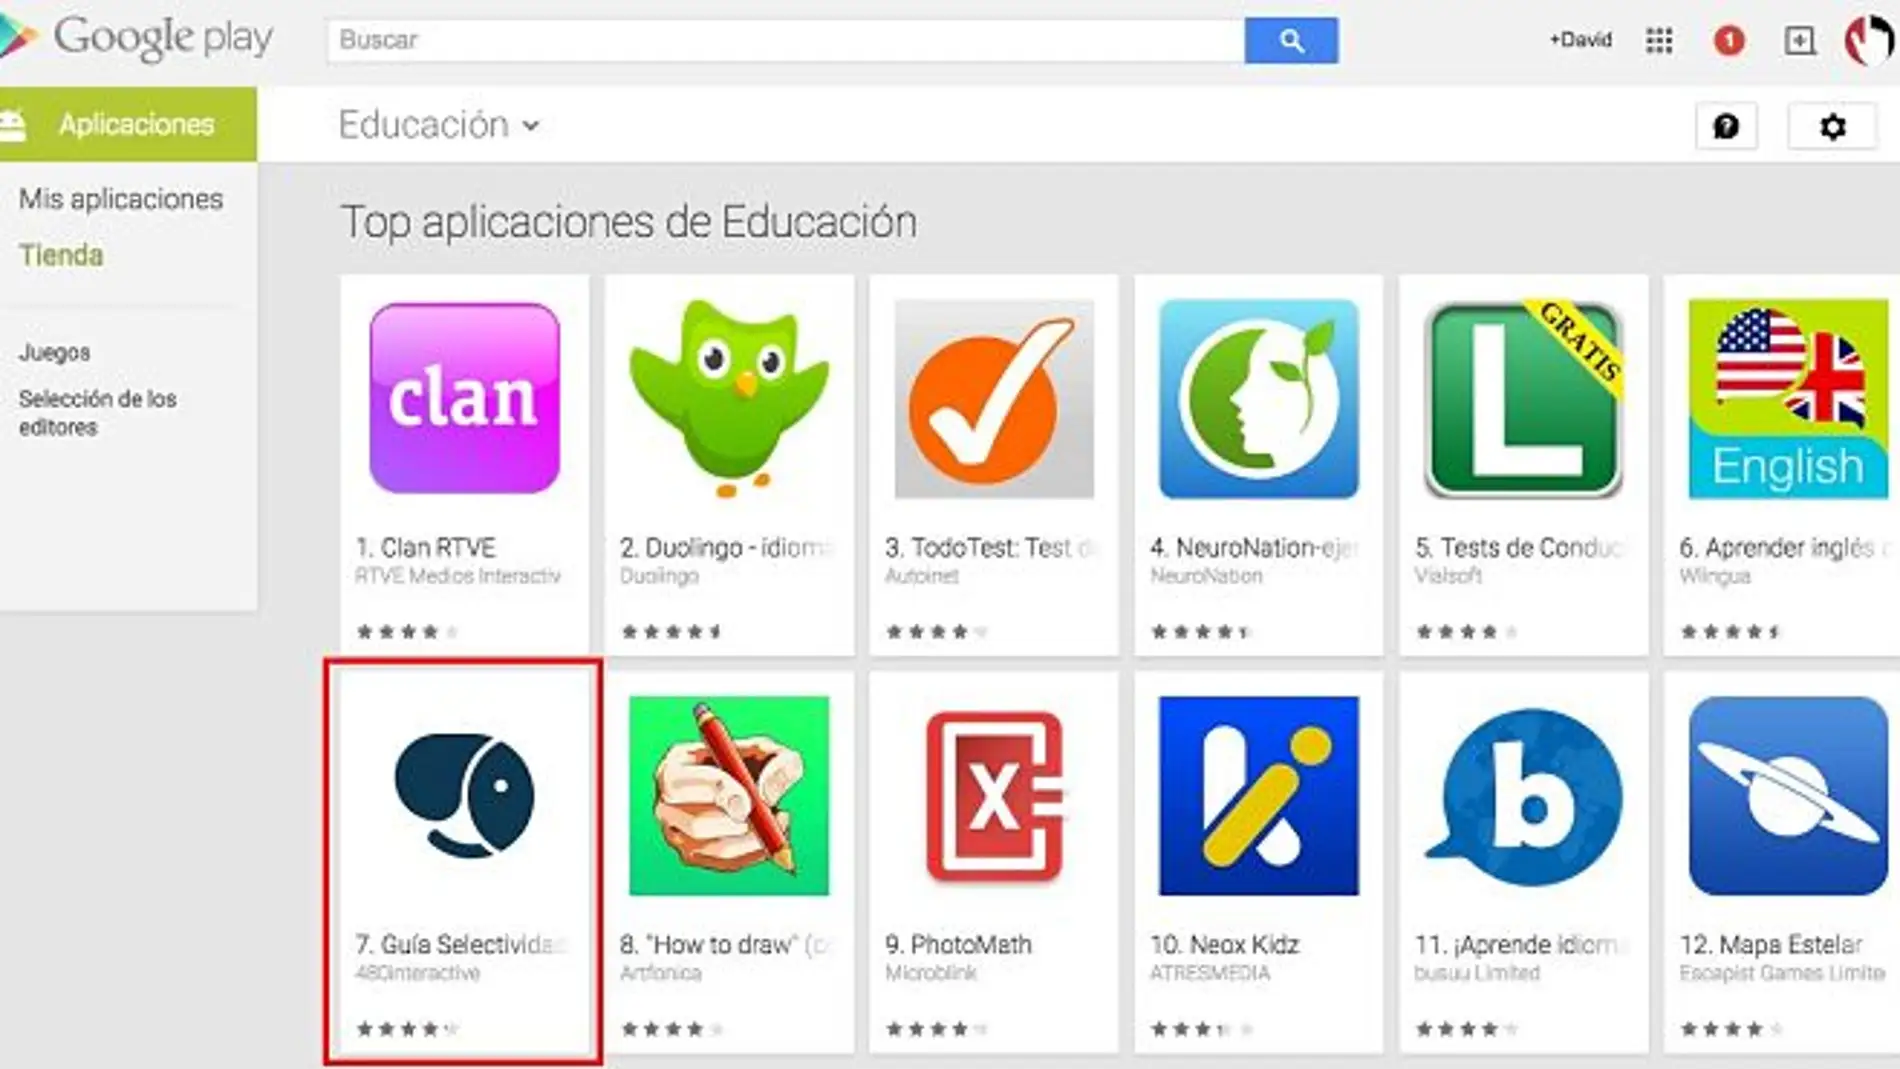 La guía entró en el top 10 de apps educa